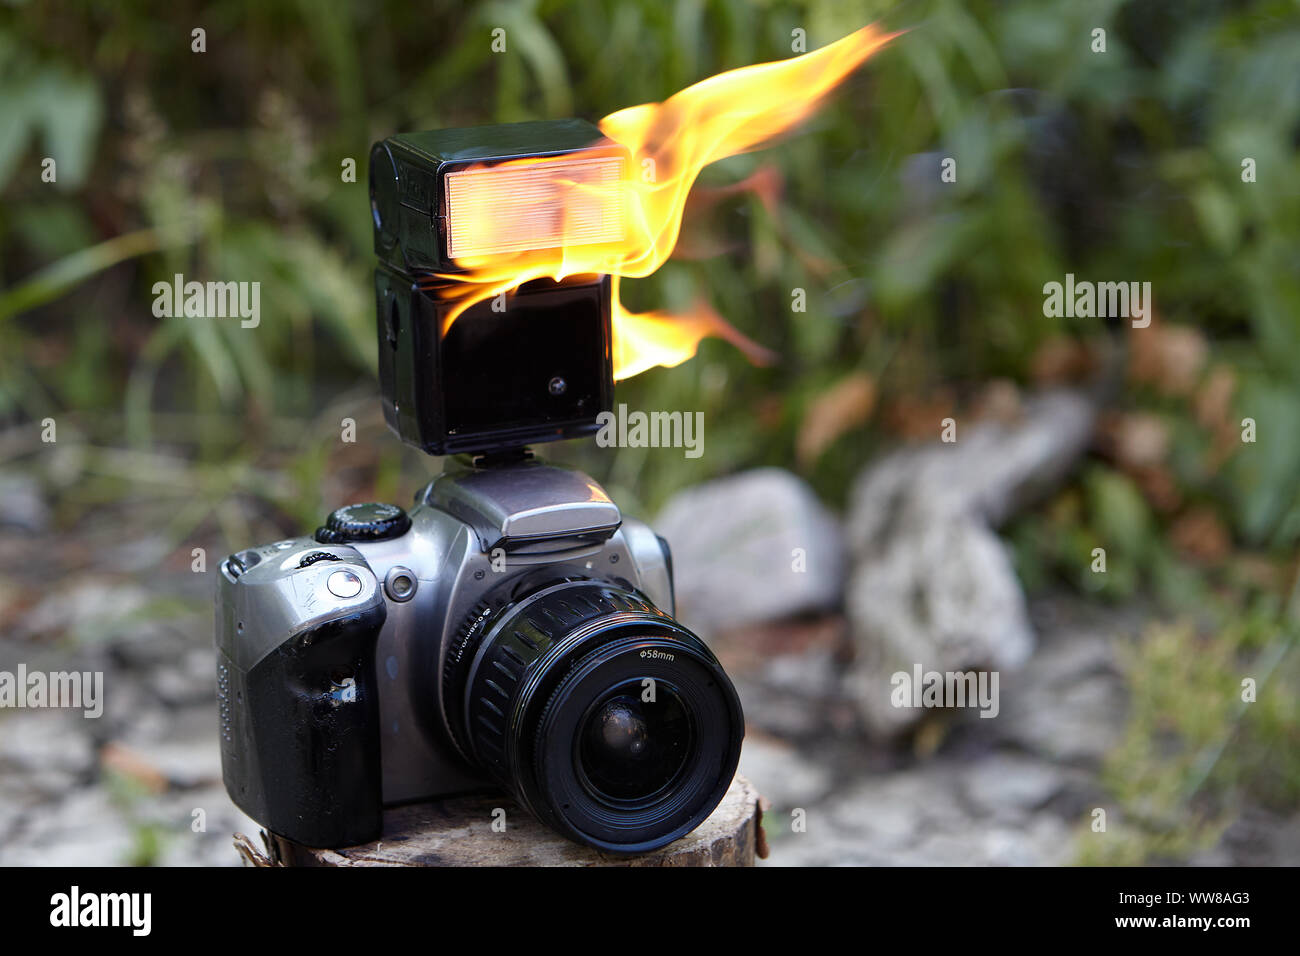 Digitale SLR-Kamera mit Zoomobjektiv und einem brennenden elektronische  Kamera Blitz. Flammen auf der Flash digitale Single-Lens Reflex Kamera  gegen die Bac Stockfotografie - Alamy